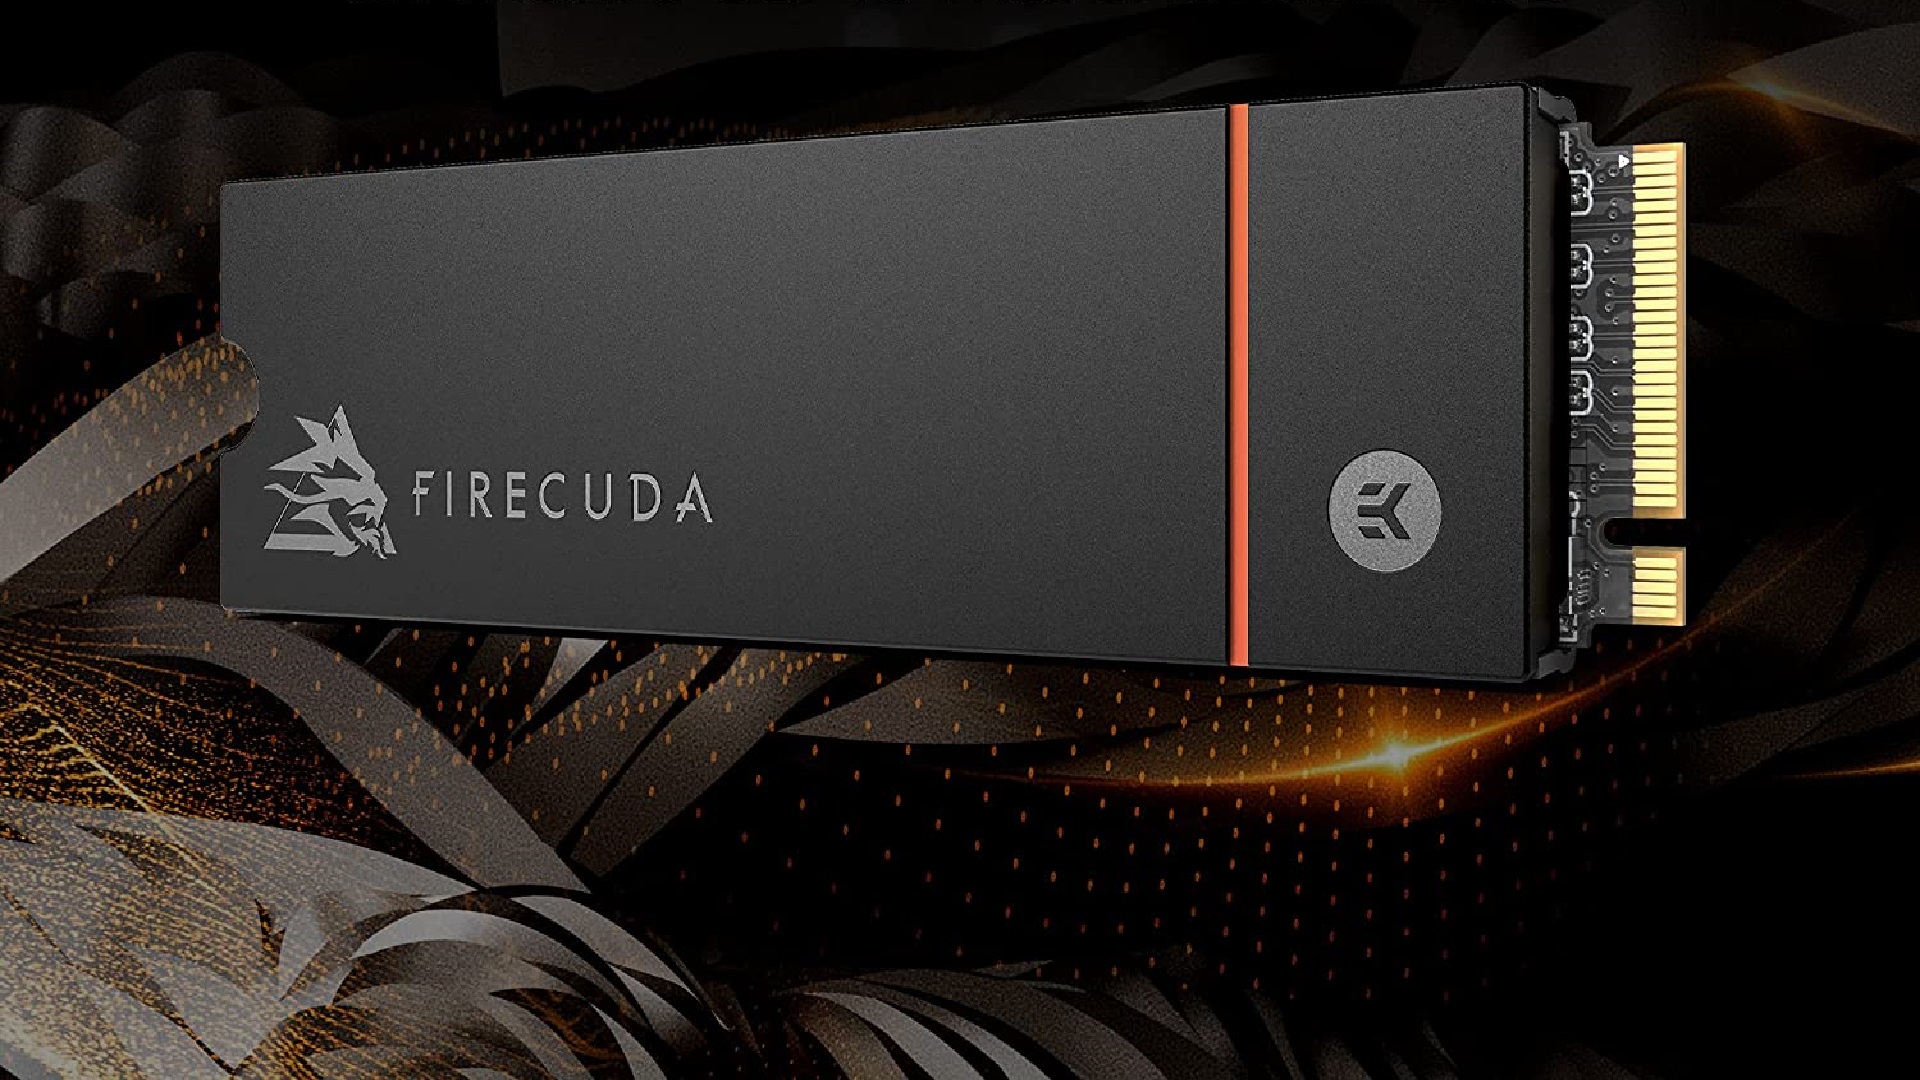 39€ pour augmenter le stockage de sa PS5 ! C'est le prix affiché  aujourd'hui sur l'un des meilleurs SSD du marché avec dissipateur, le  Firecuda 530 